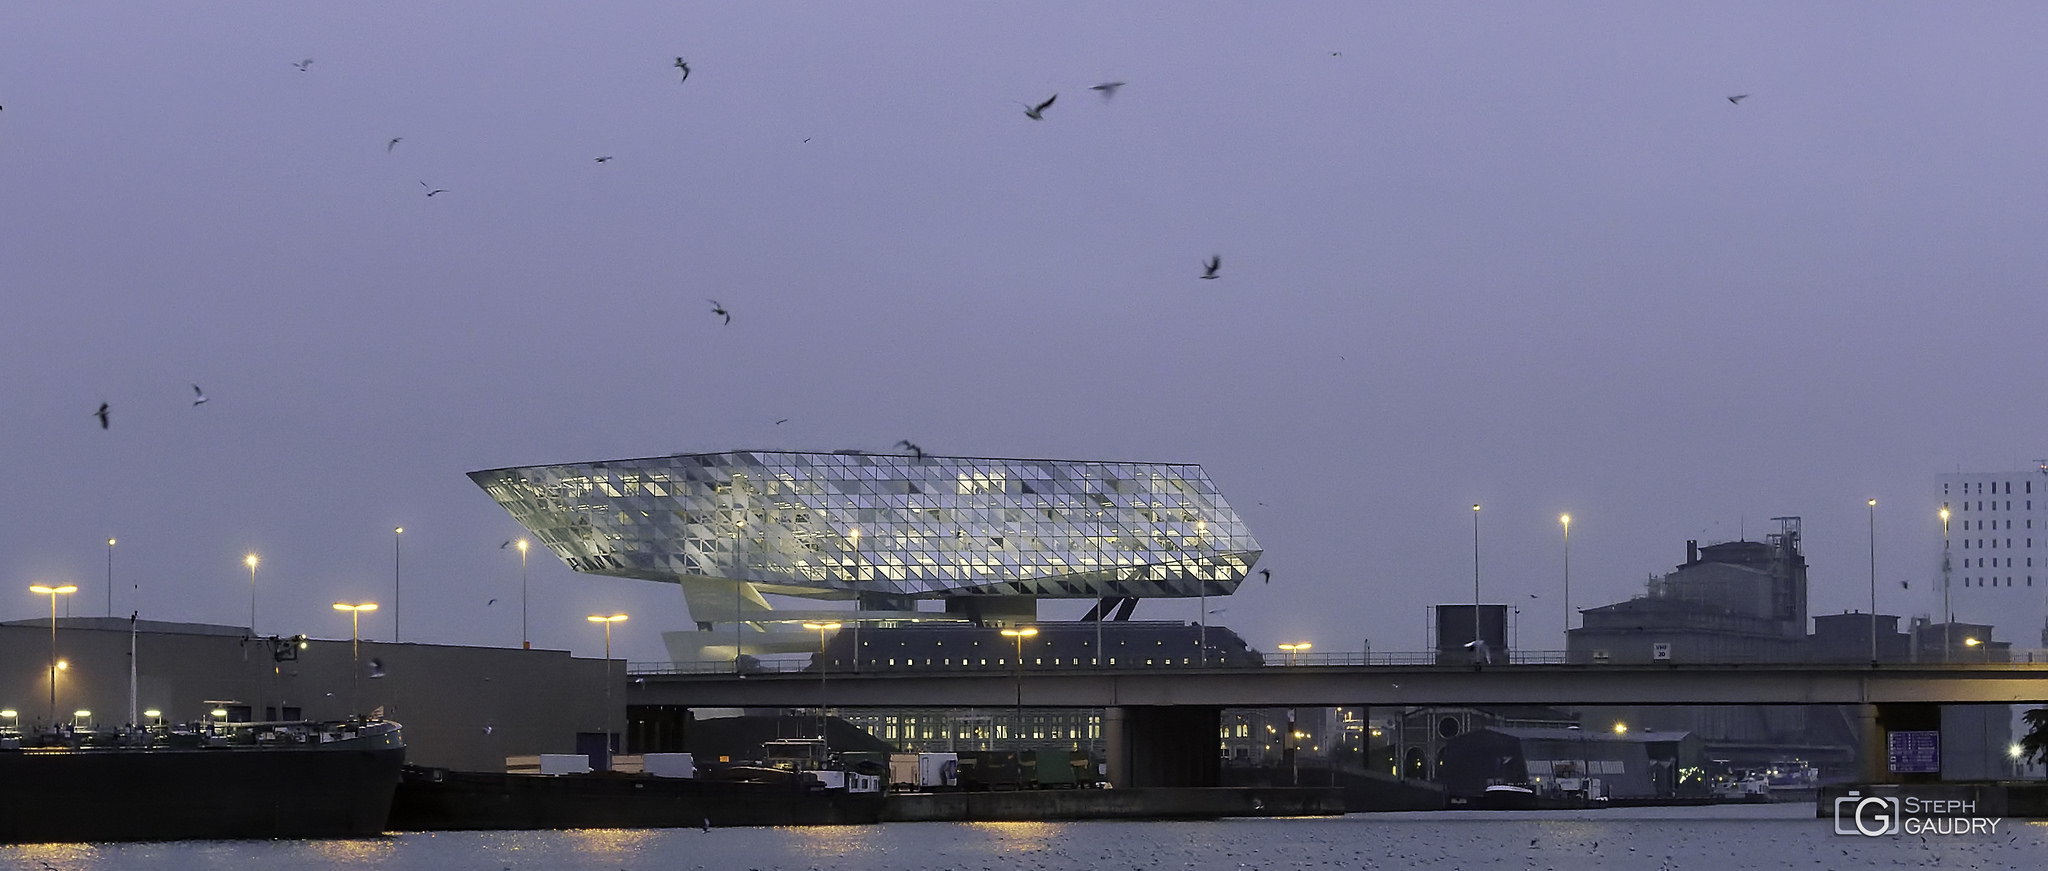 Architecture et graphisme / Antwerpen - en route pour Devoxx...